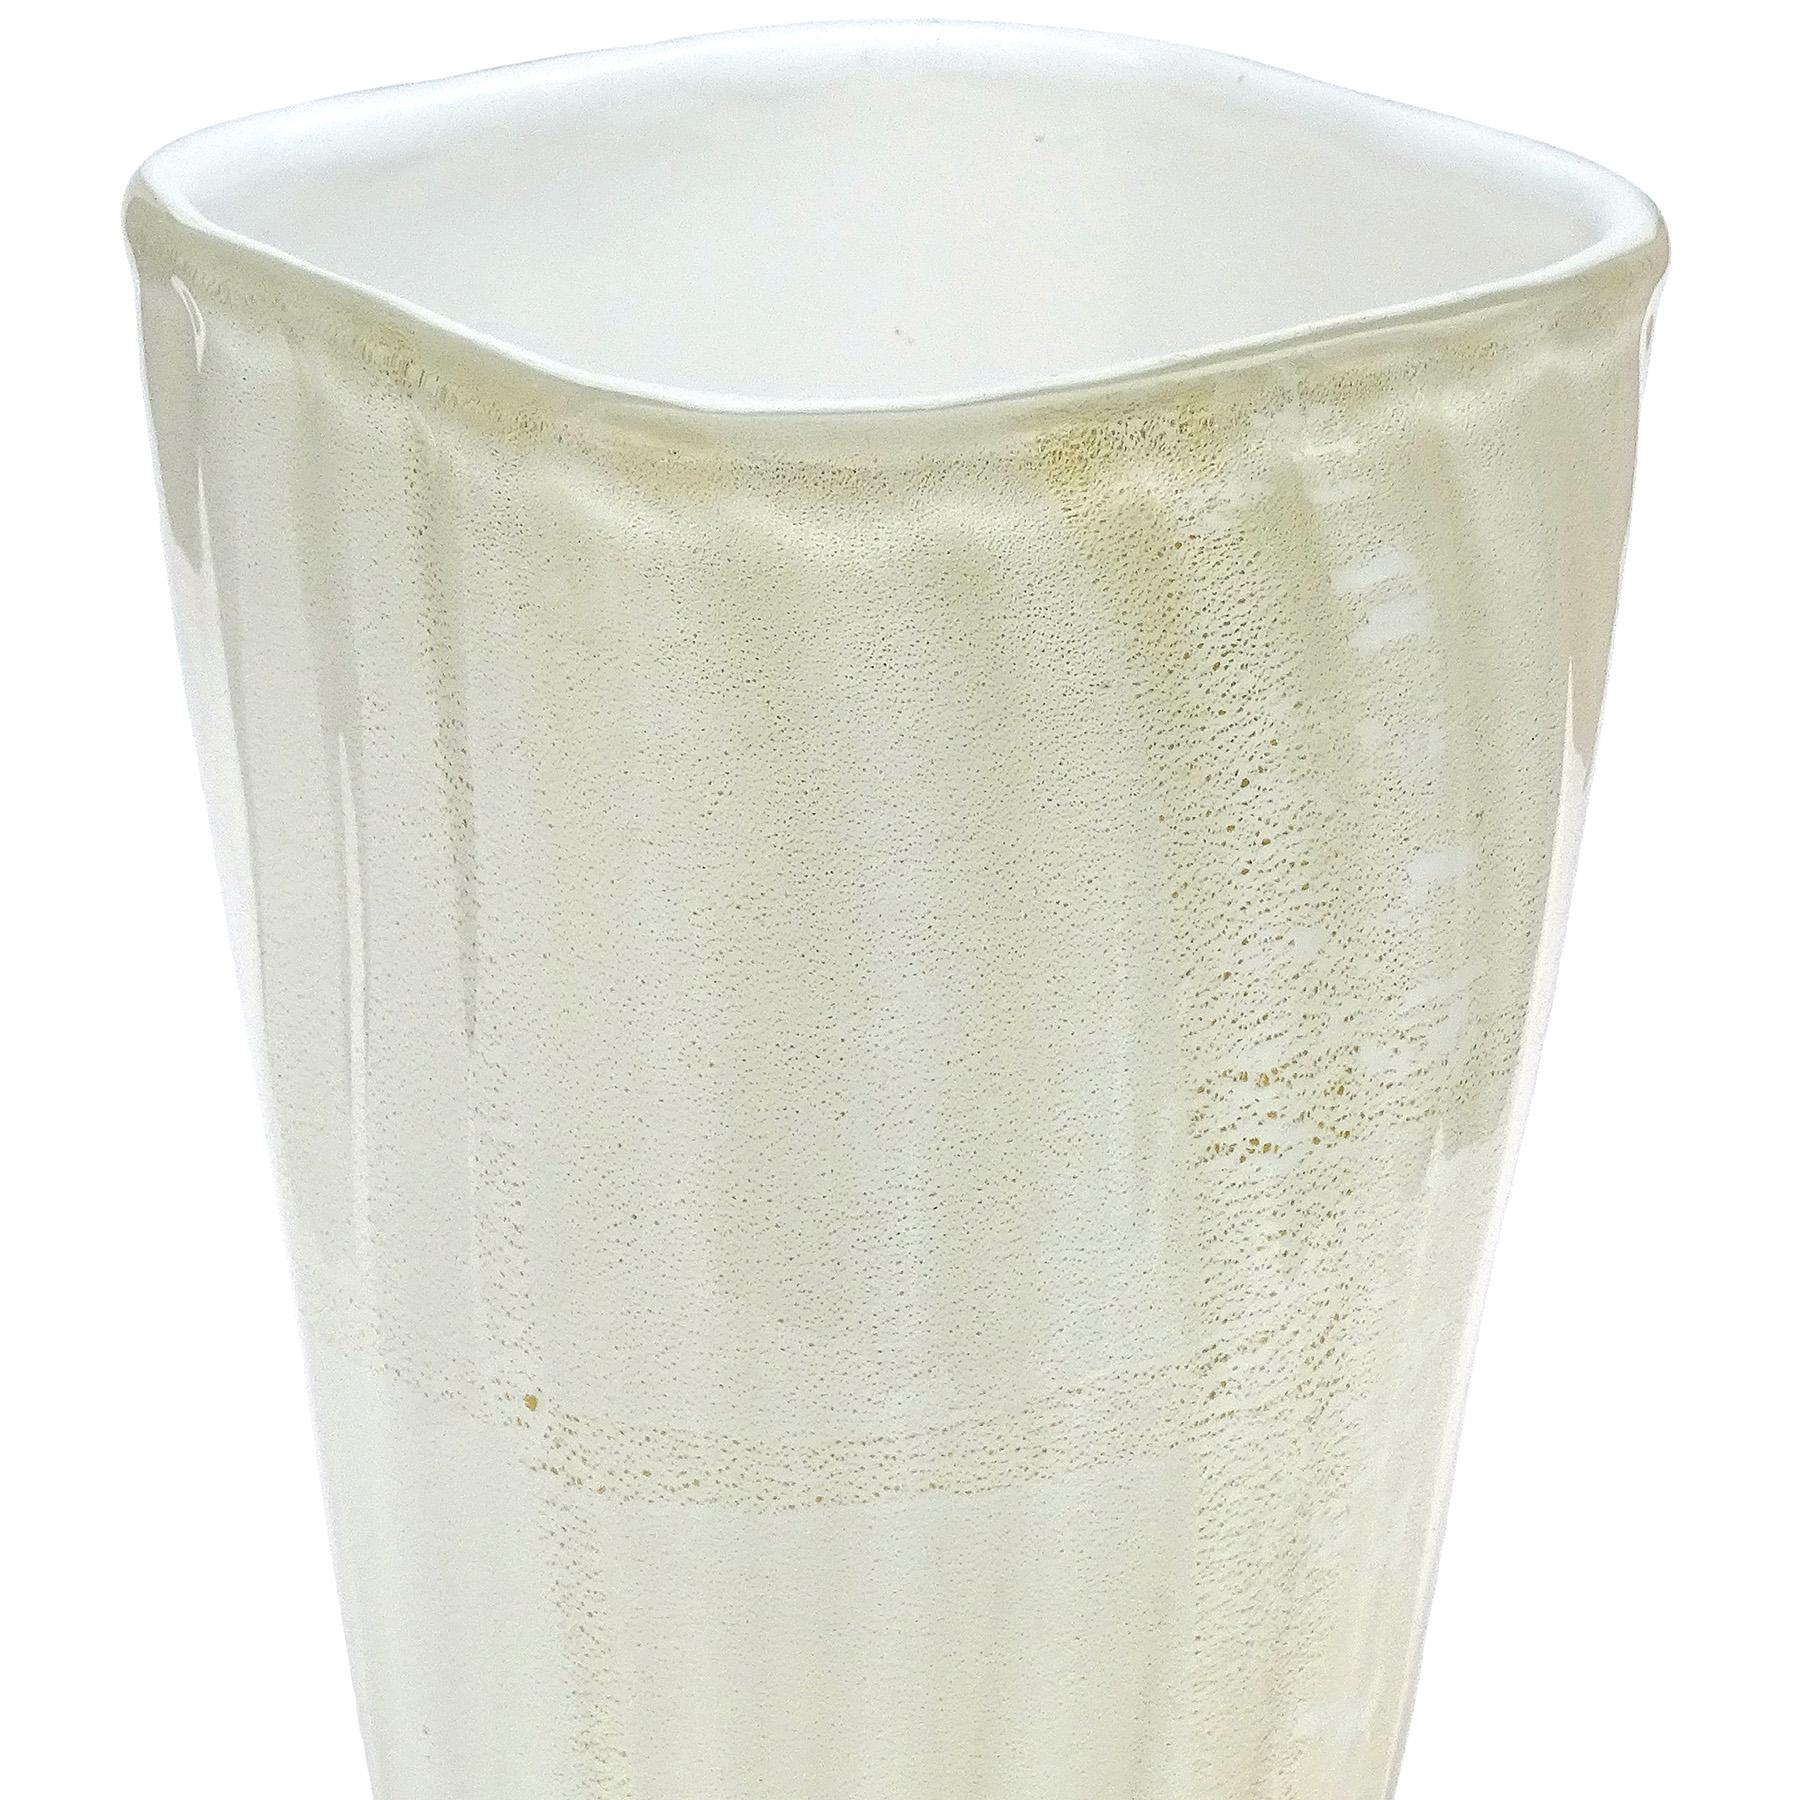 Schöne und große, Vintage Murano mundgeblasenen weißen und goldenen Flecken italienischen Kunstglas dekorative Blumenvase. Sie ist nachweislich der Firma Fratelli Toso zuzuordnen und trägt noch das originale blau-silberne Label 